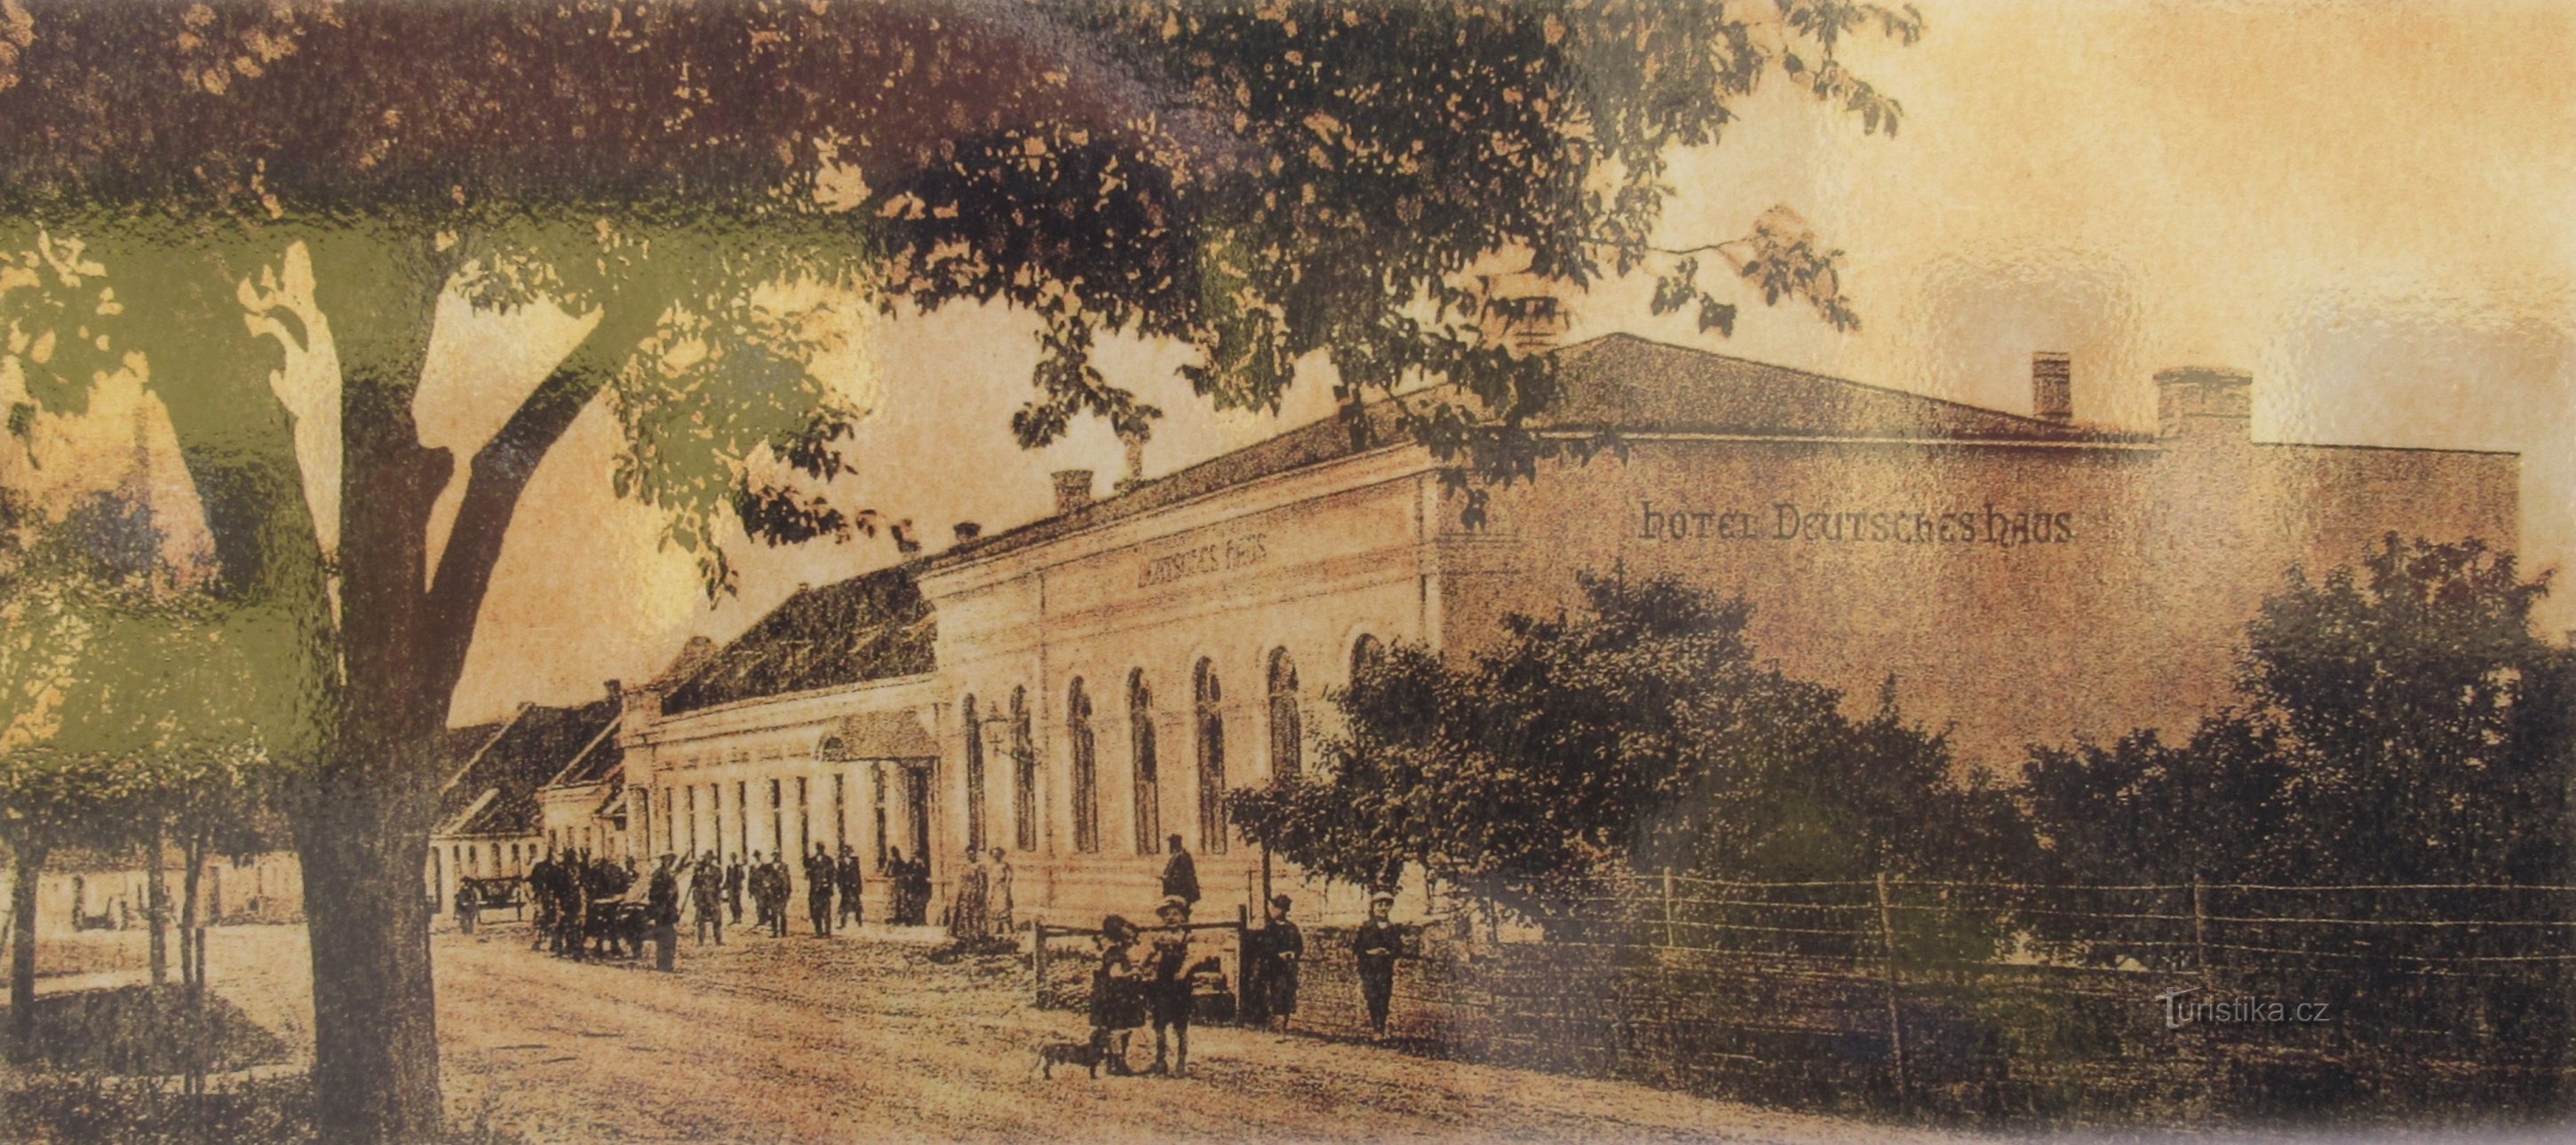 20 年代のポストカードに描かれた旧ルドヴィーク印刷所の建物 (trans